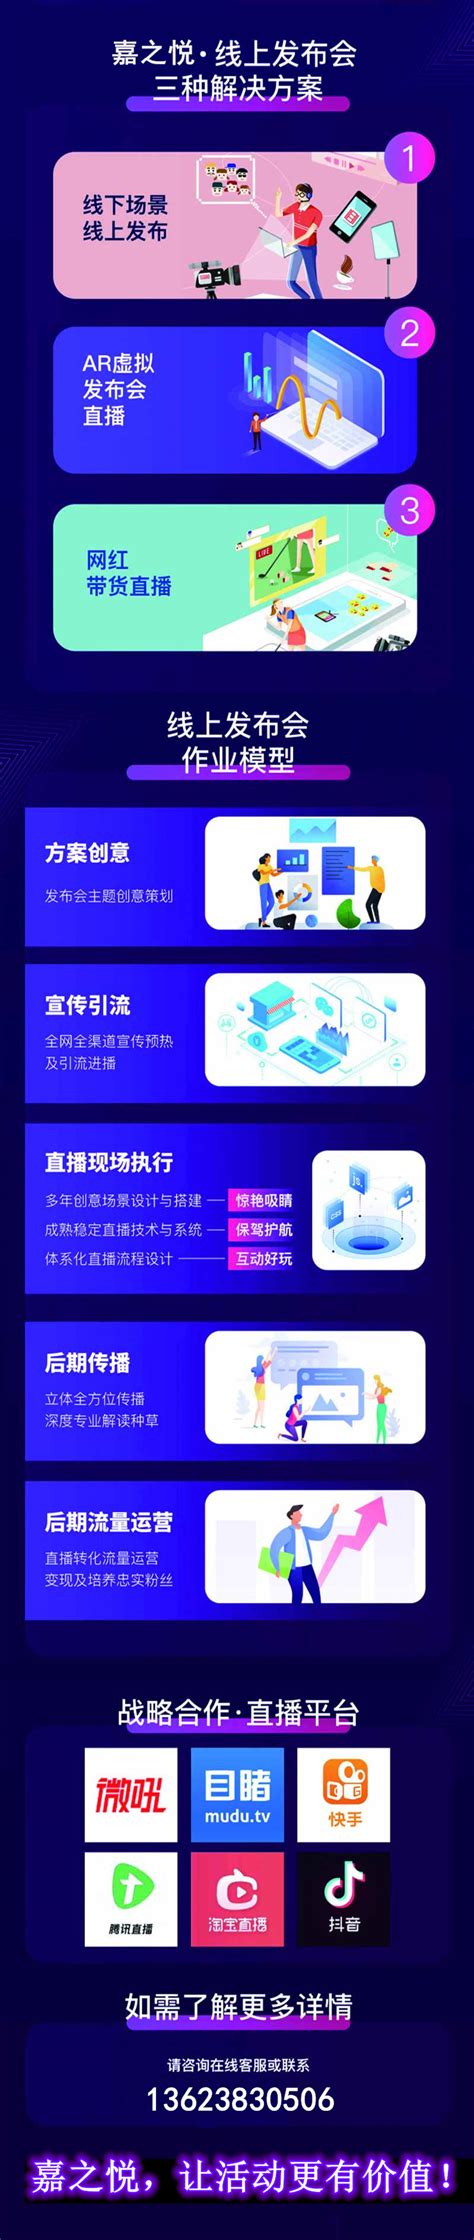 河南郑州线上发布会活动策划公司 - 河南嘉之悦文化传媒